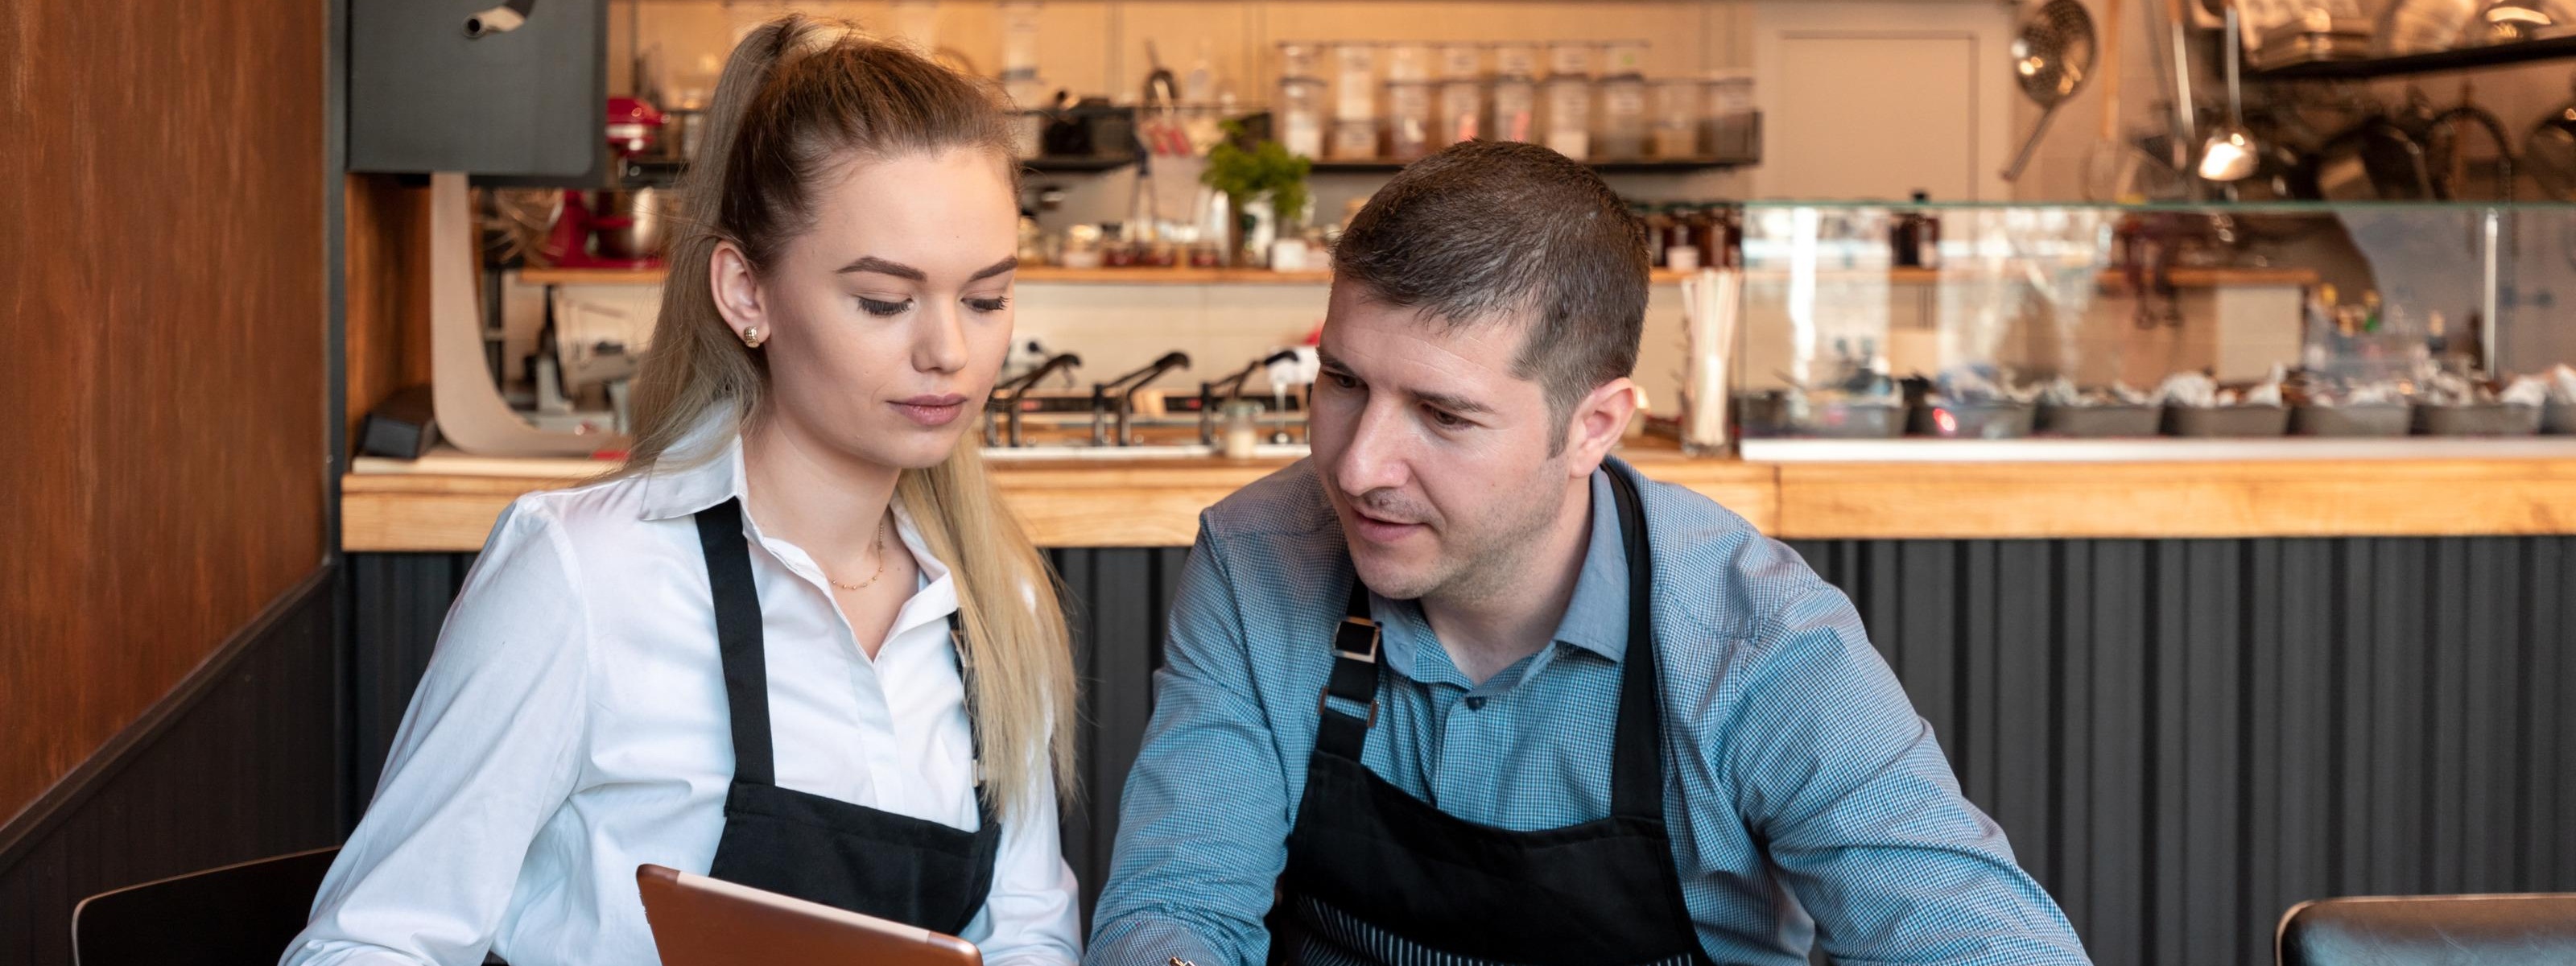 Zwei Personen in Arbeitskleidung sitzen an einem Tisch in einem Restaurant und blicken auf ein Tablet während mit einem Taschenrechner gerechnet wird und mit einem Stift Notizen gemacht werden